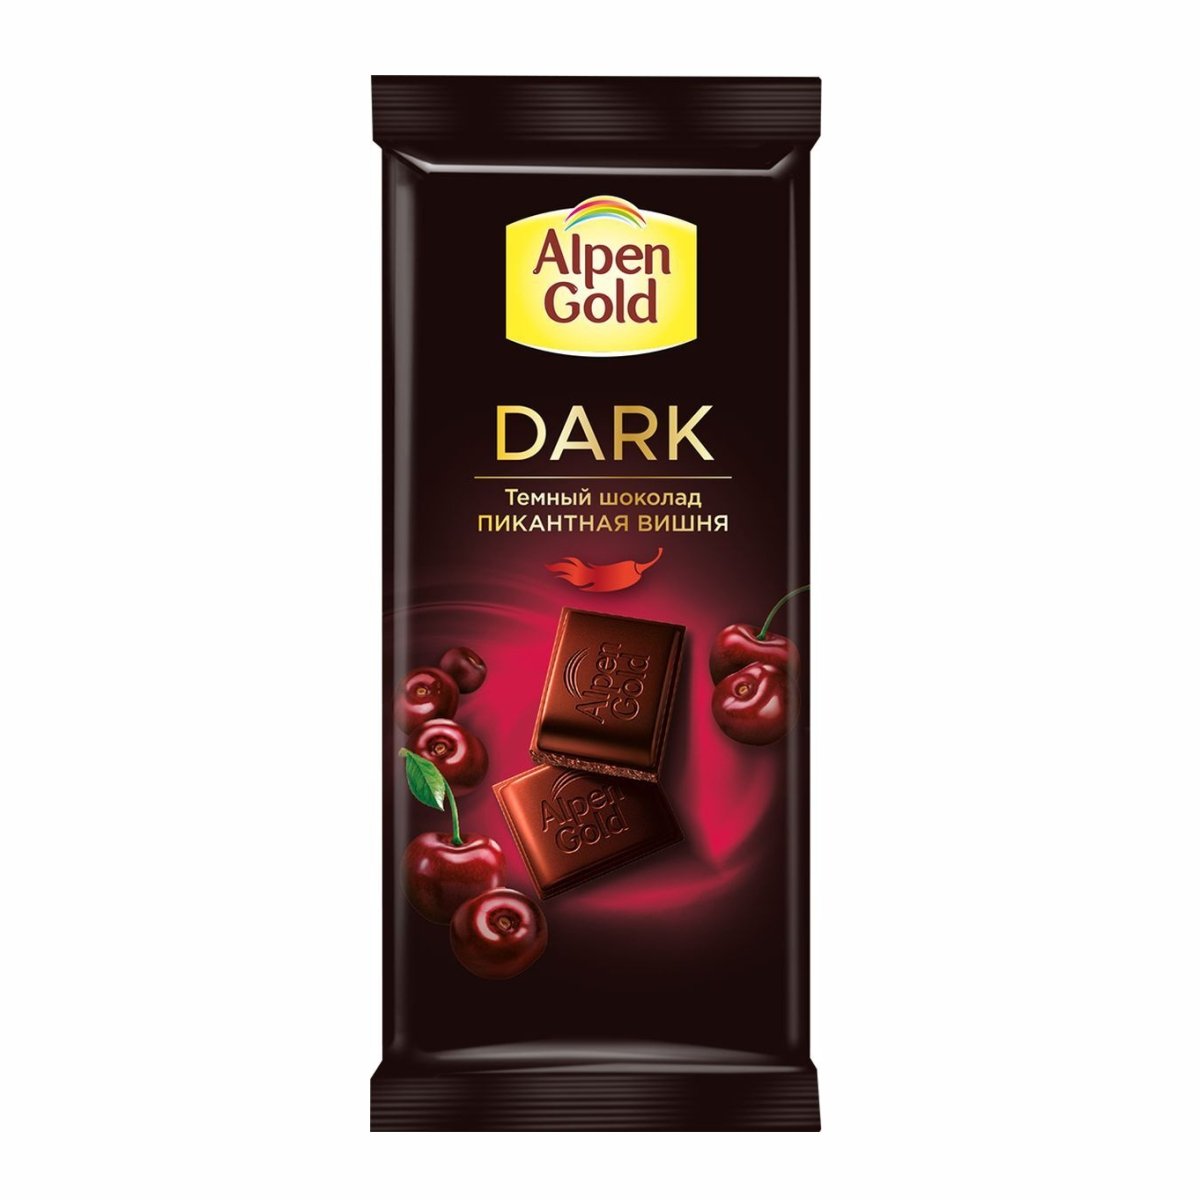 Шоколад каталог товаров. Альпен Гольд темный классический. Alpen Gold Bitter Горький шоколад,. Шоколадка Альпен Гольд темный. Alpen Gold Dark тёмный шоколад «пикантная вишня»,.